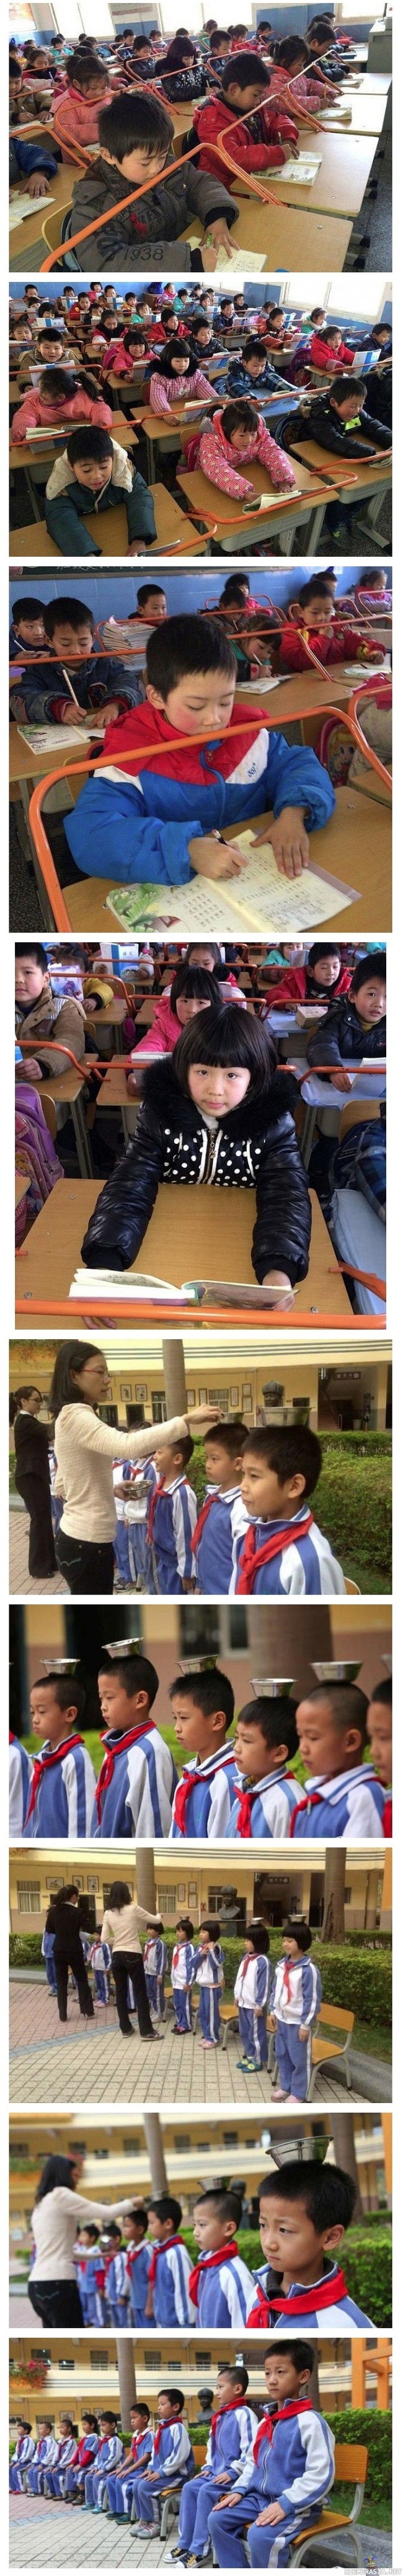 Opiskelua Kiinalaisessa koulussa - Opinahjossa on astetta kovempi kuri oppilaille